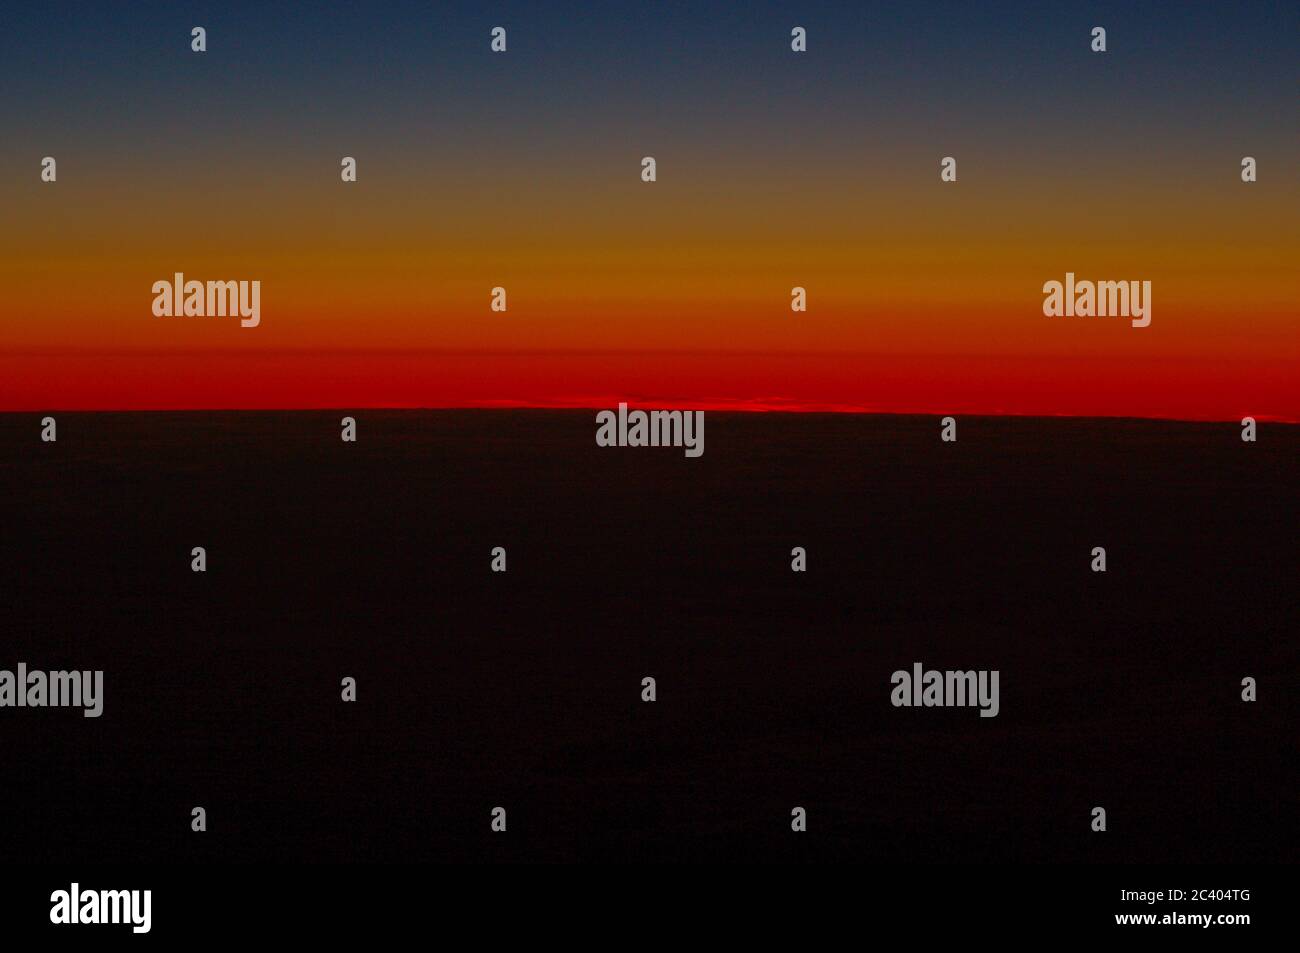 Sequenza di immagini dello stesso tramonto stesso punto di vista,Tramonto sul mare,Tramonto arcobaleno sul mare,Arcobaleno,cremisi,tramonto,spettro arcobaleno,Tramonto, Foto Stock